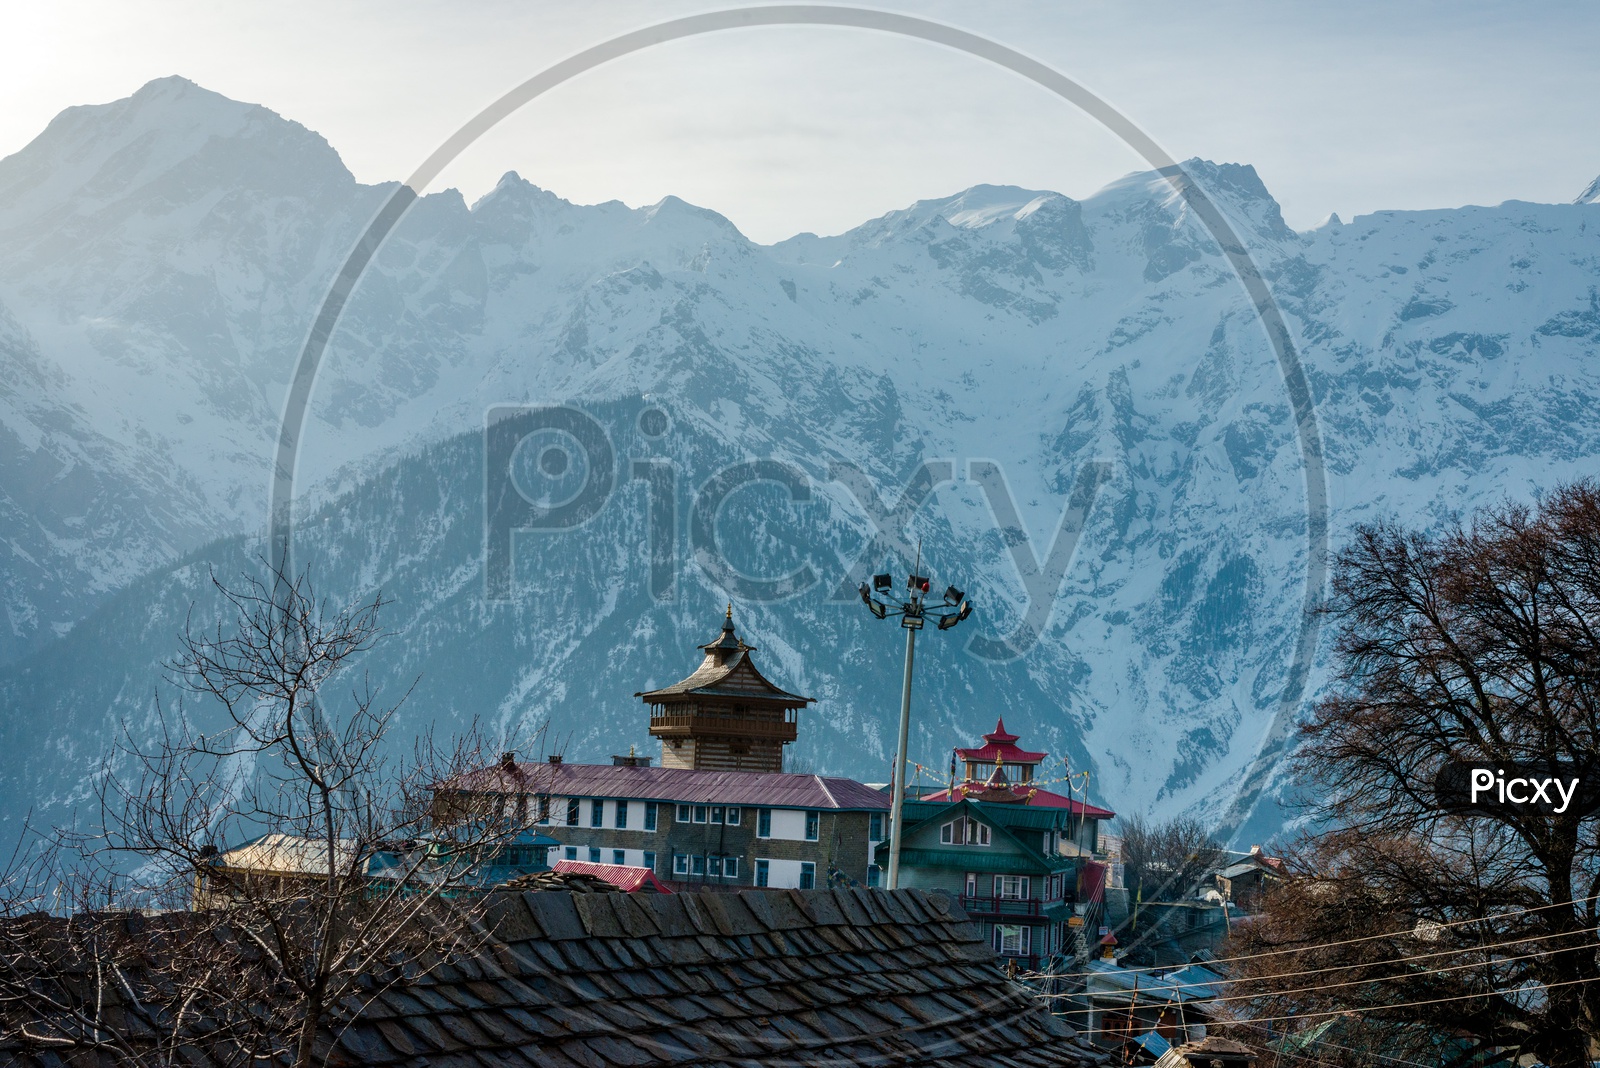 Landscape of Buddhist Shrine alongside the Himalayas